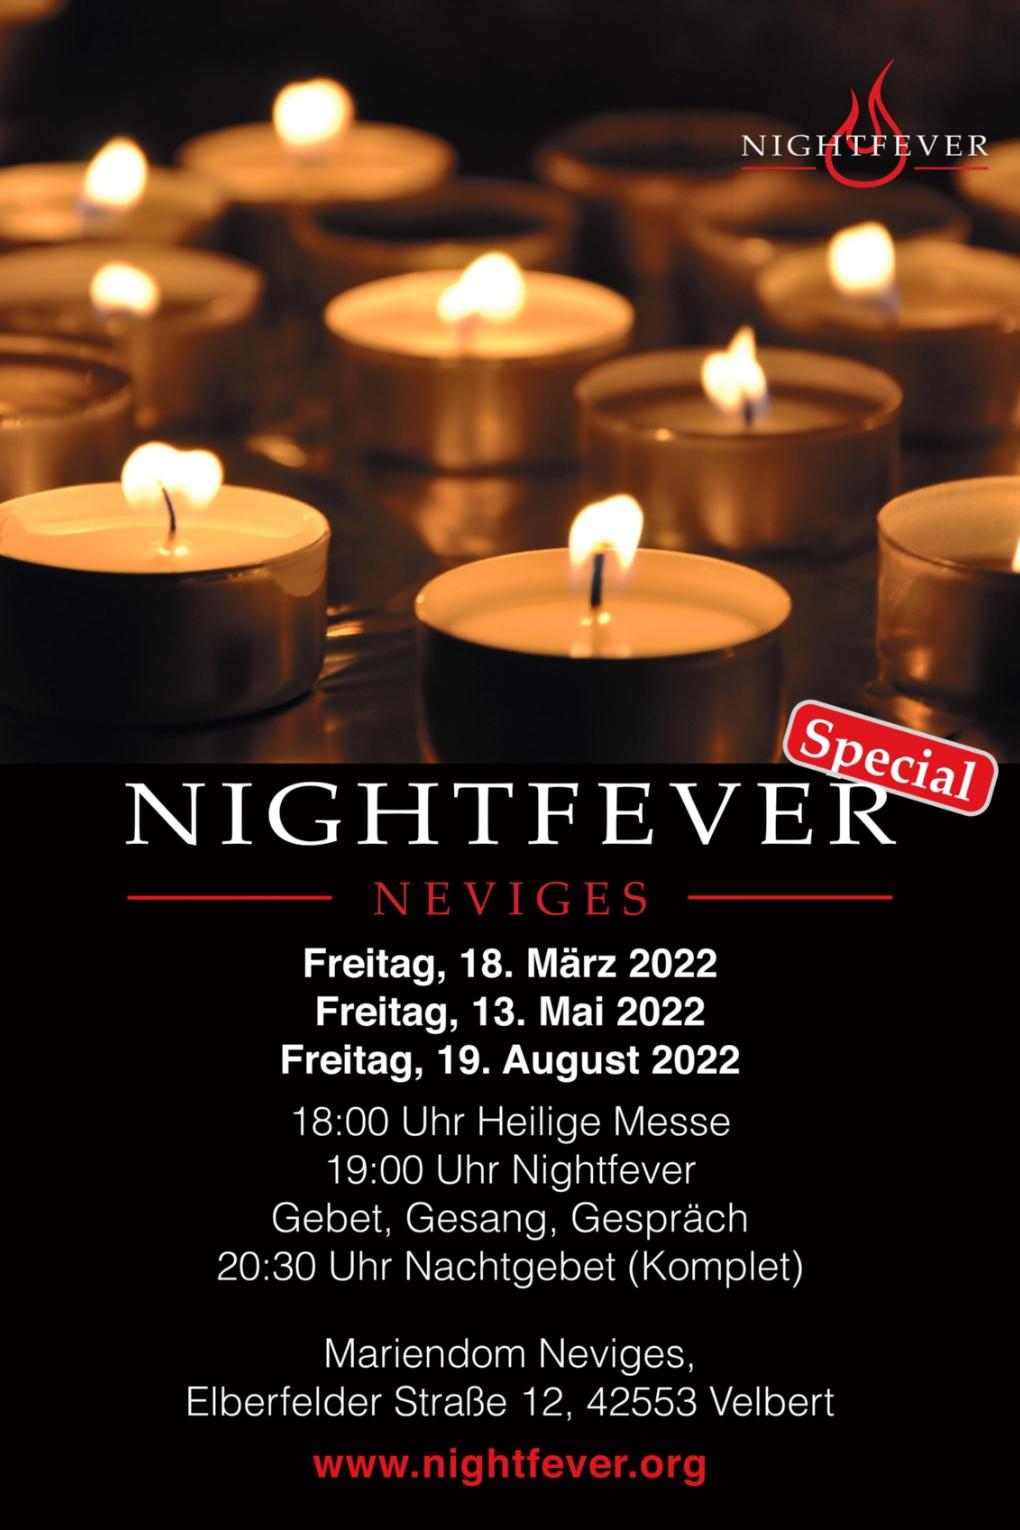 Nightfever 20223-8